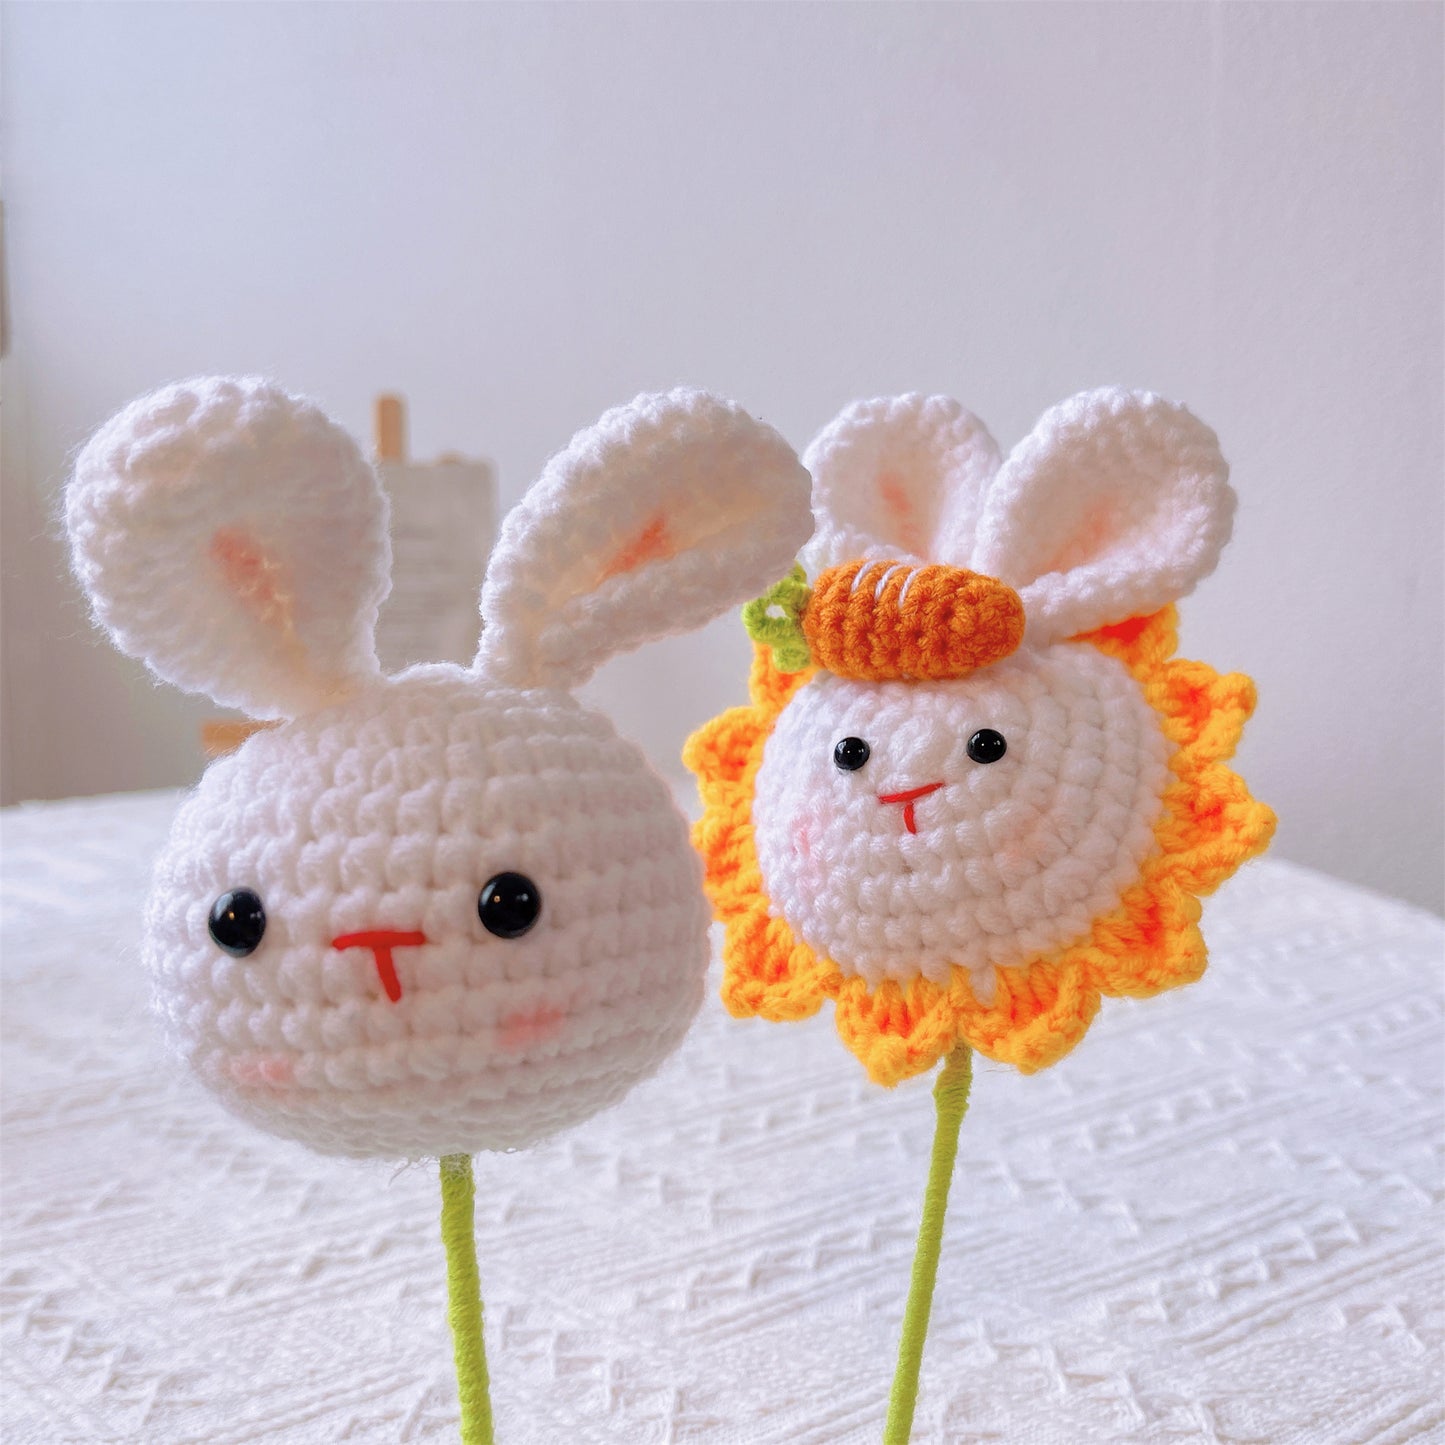 Bunny Bliss : Joli pieu de tête de lapin au crochet fabriqué à la main avec finition lapin et tournesol pour un décor de jardin fantaisiste